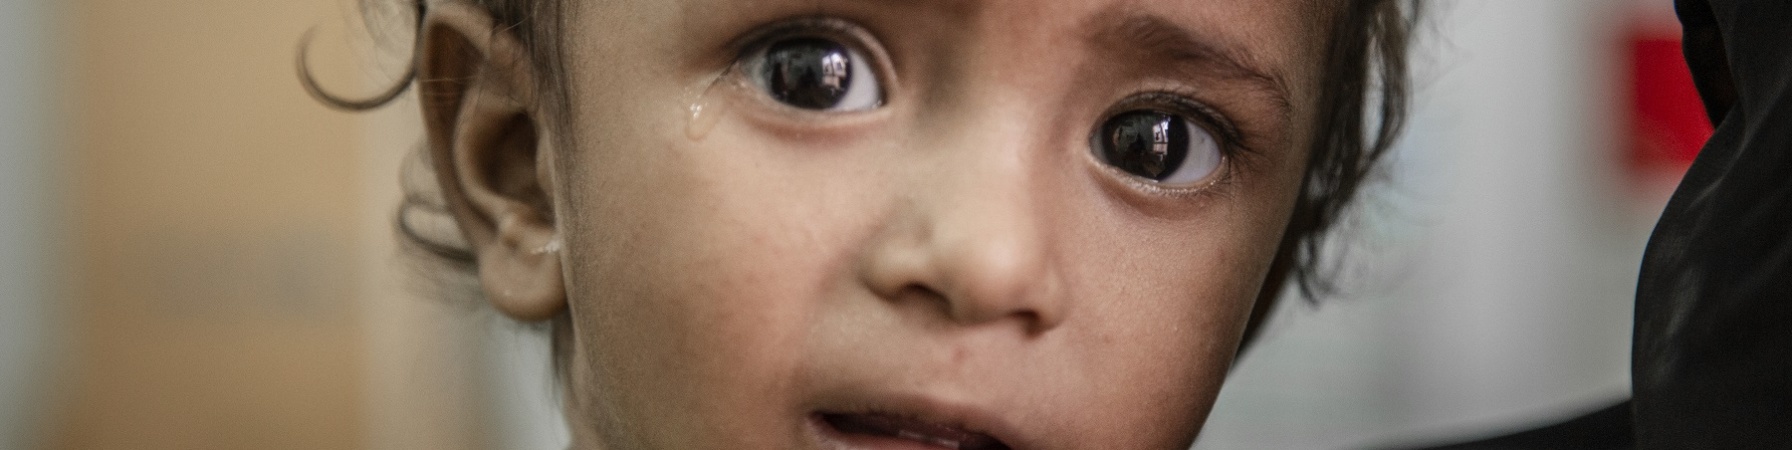 Primo piano bambino yemenita che piange